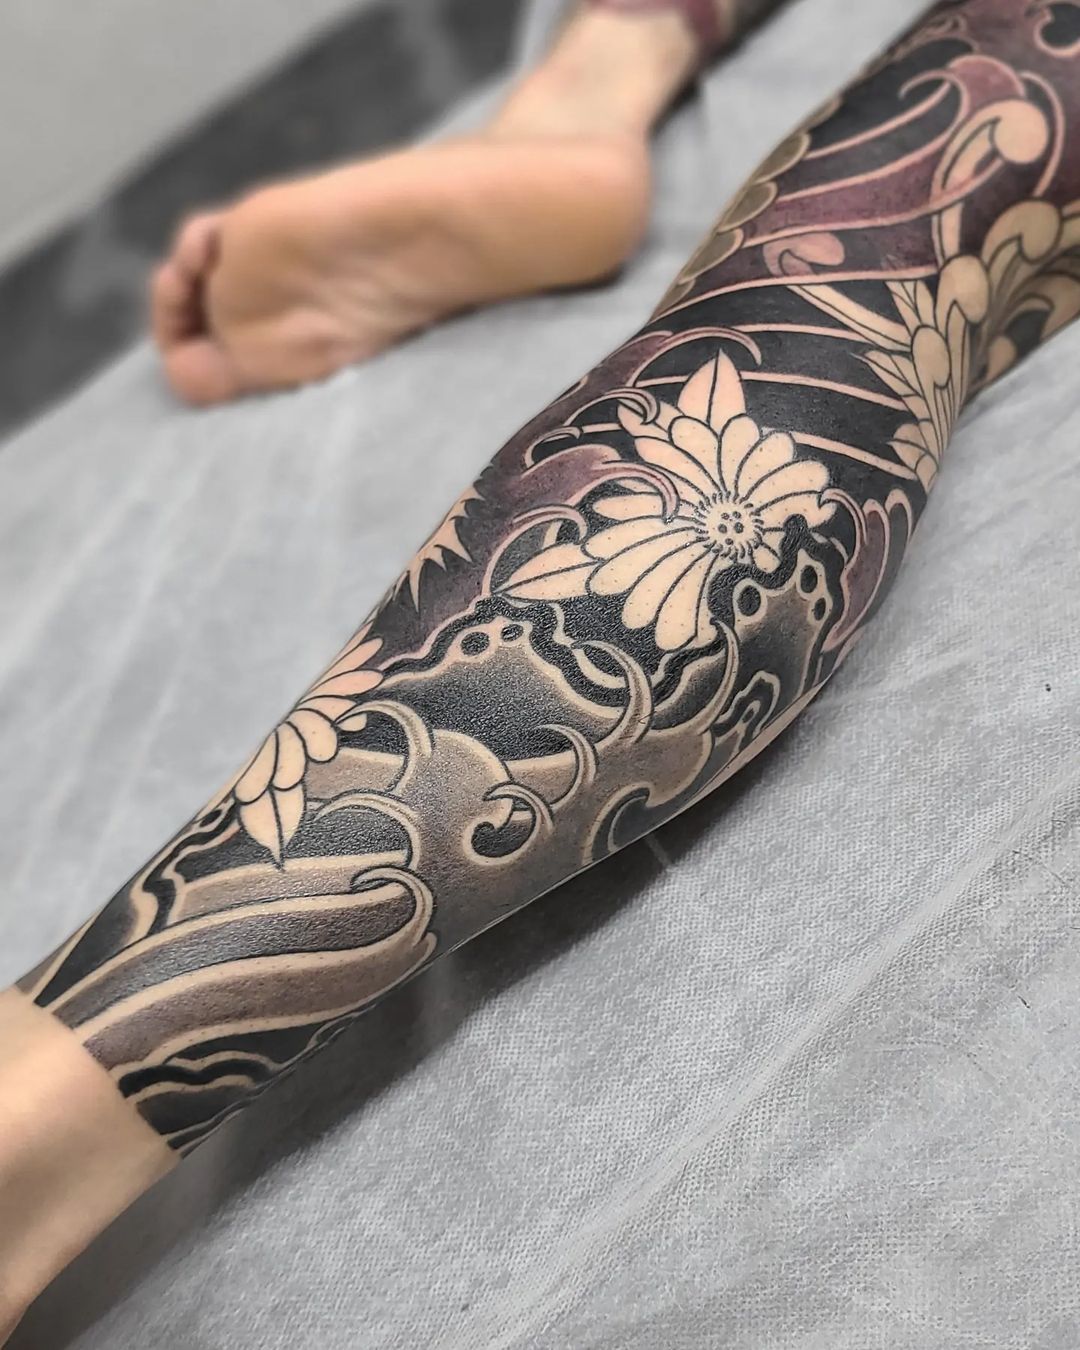 Full leg sleeve tattoo by zin.tattoo